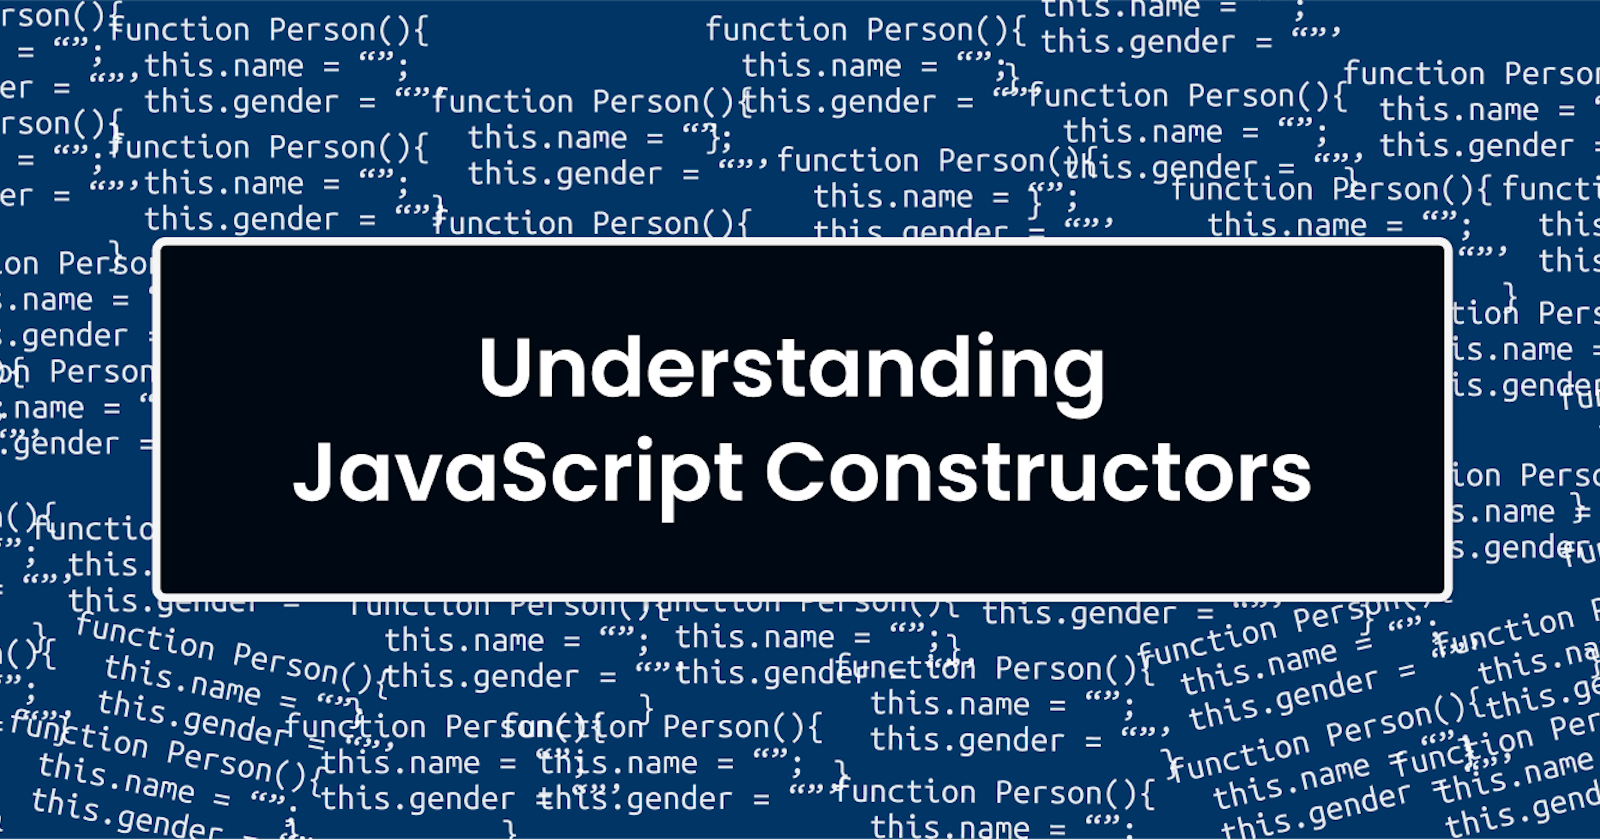 Understanding Constructor Functions in JavaScript